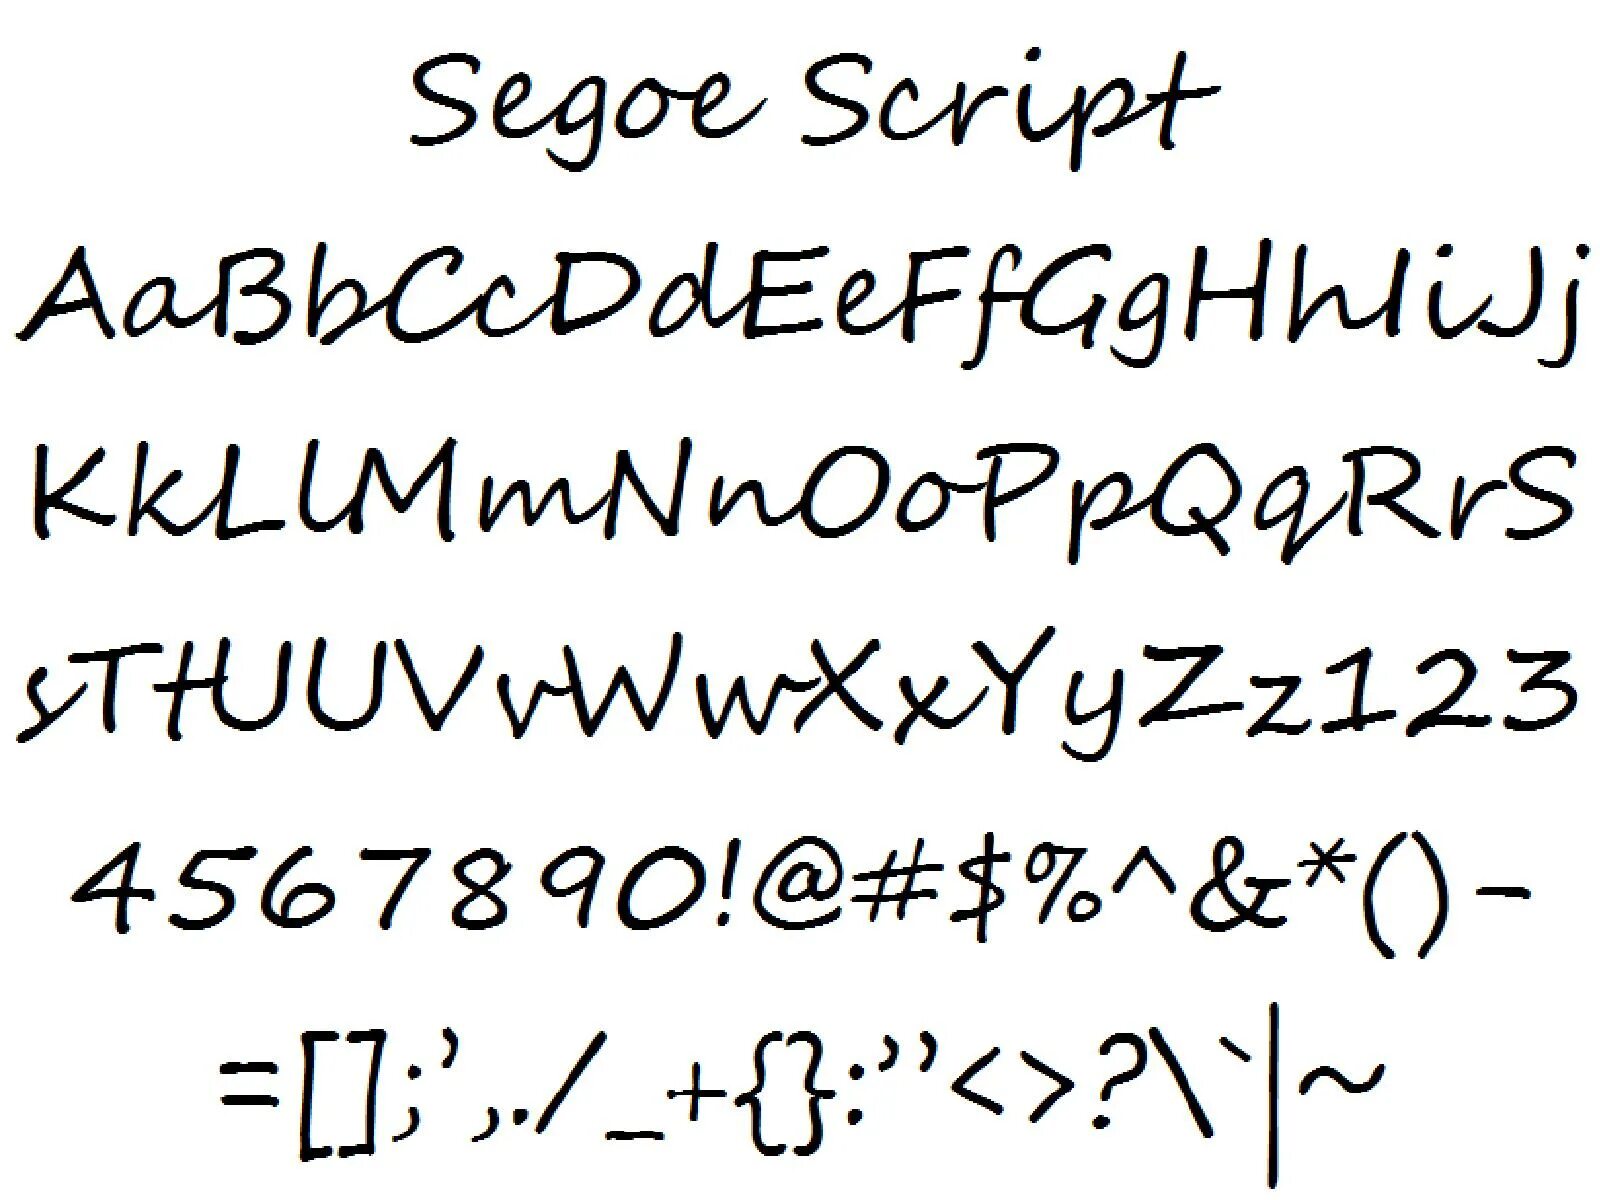 Roams script. Шрифт Segoe Print. Segoe script шрифт. Segoe UI шрифт. Скрипт Segoe script.